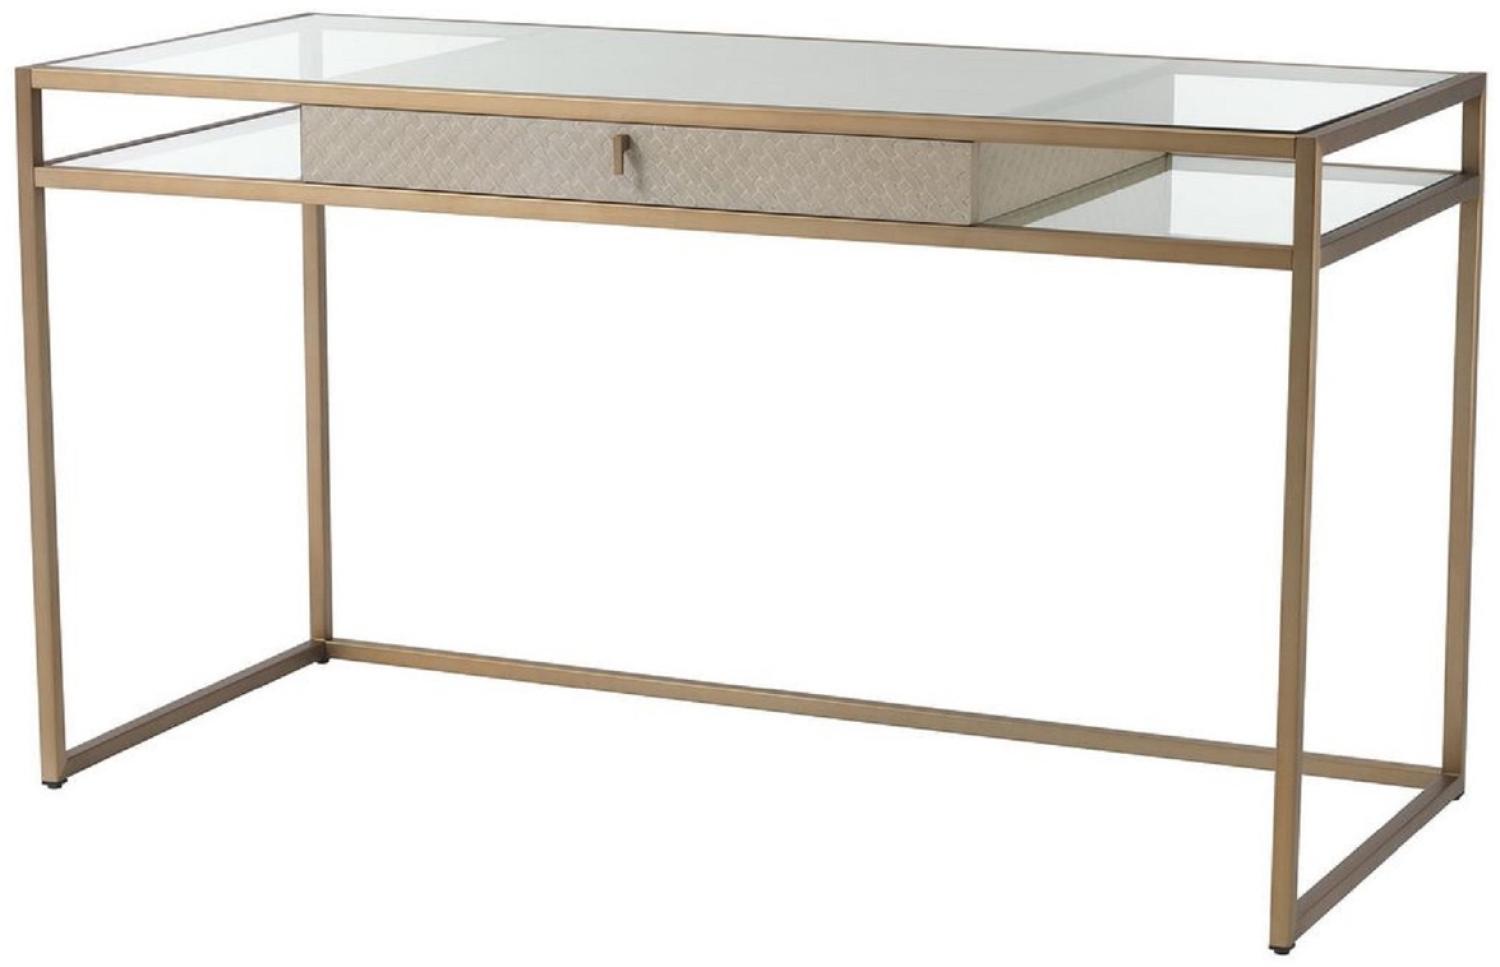 Casa Padrino Luxus Schreibtisch Creme / Messing 135 x 60 x H. 75,5 cm - Bürotisch mit Schublade - Luxus Büromöbel - Luxus Qualität Bild 1